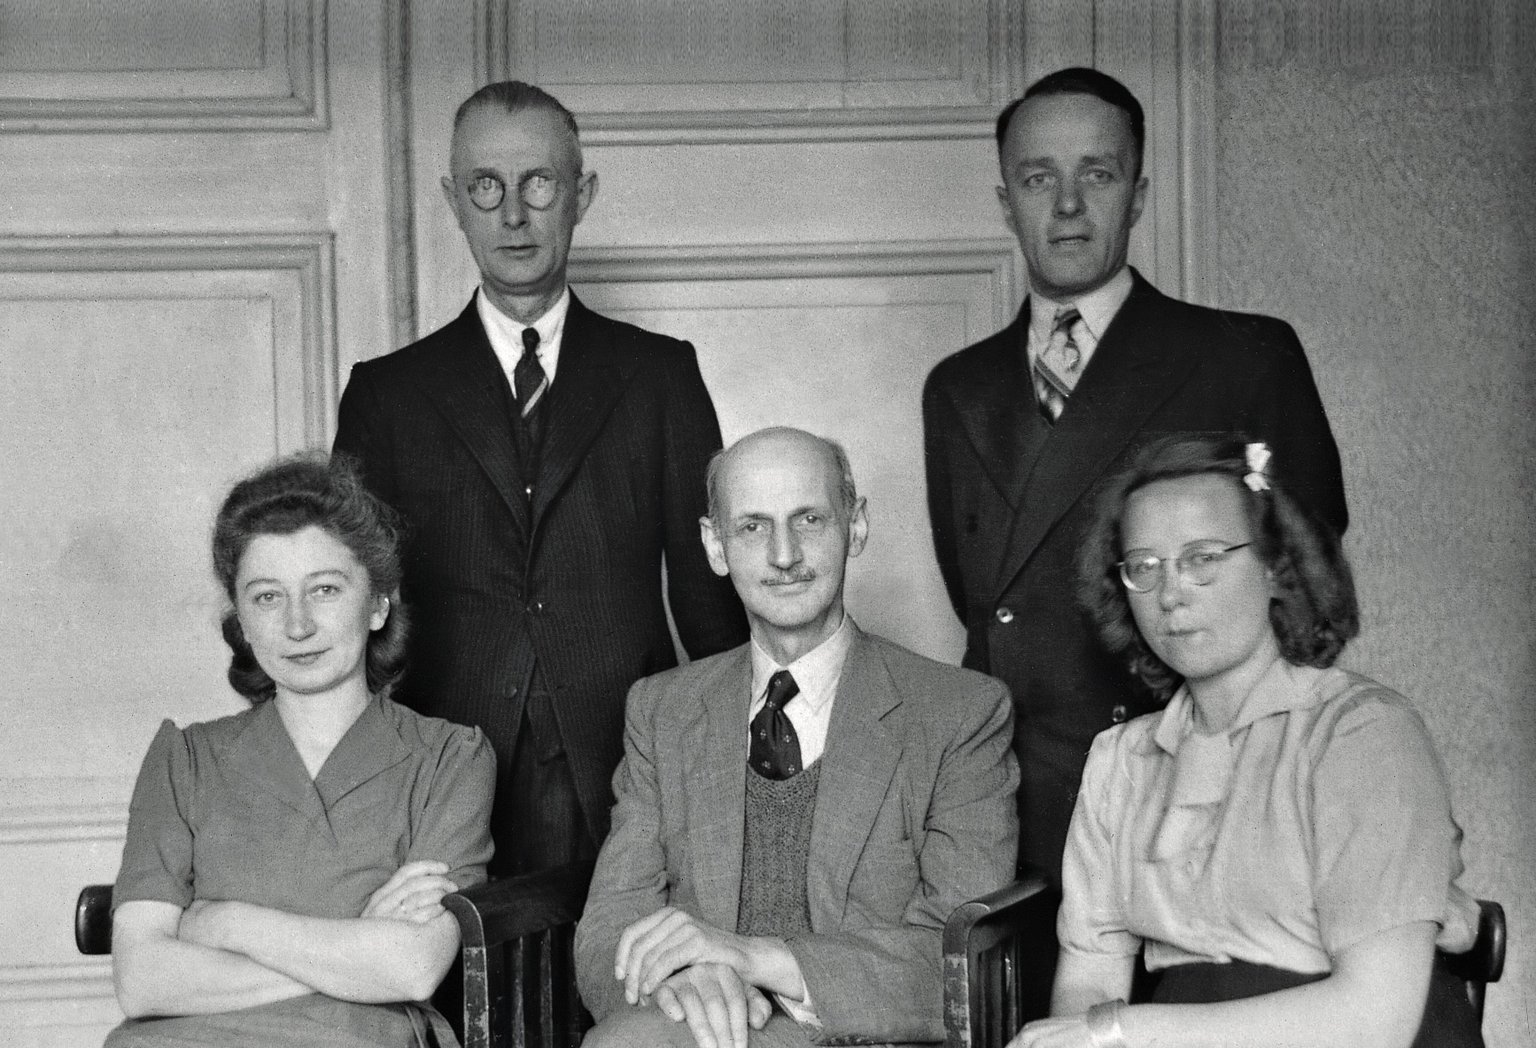 Otto Frank mit den Helfer*innen im Büro der Prinsengracht 263, Oktober 1945. Von links nach rechts: Miep Gies, Johannes Kleiman, Otto Frank, Victor Kugler und Bep Voskuijl.